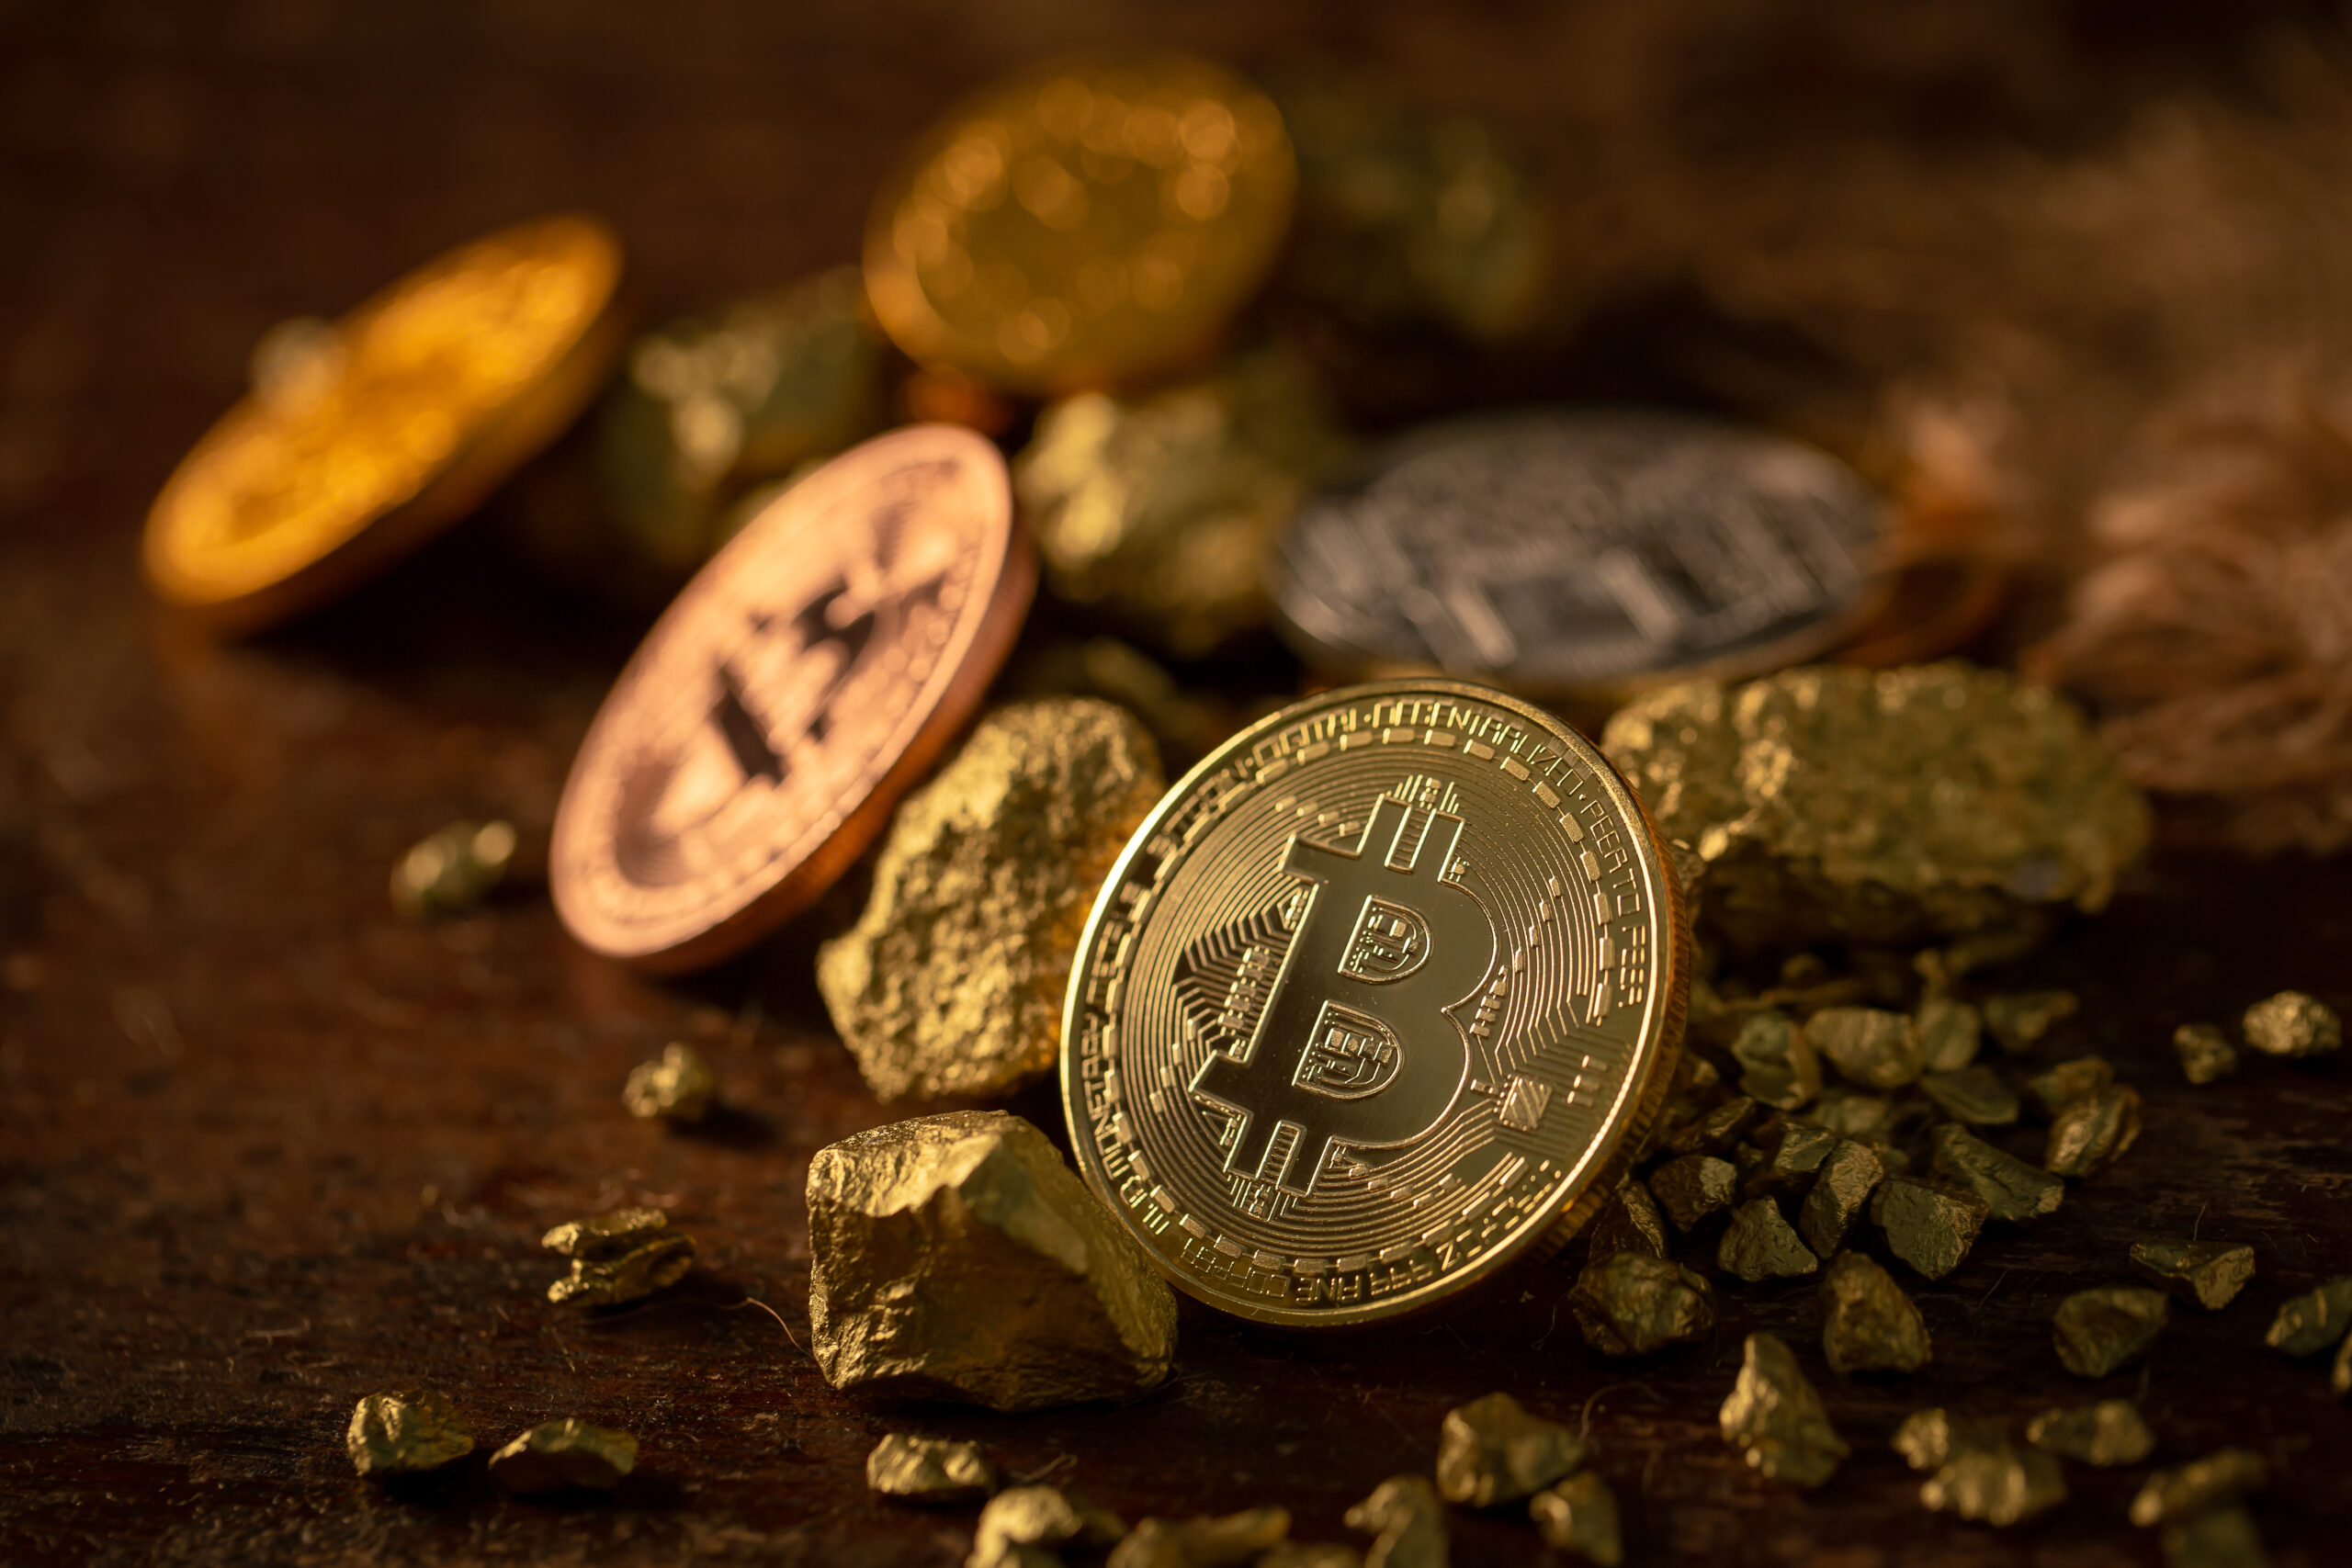 Na tym obrazku możemy zobaczyć kilka monet bitcoina ułożonych w równym rzędzie. Każda moneta jest wyraźnie oznaczona logo bitcoina oraz symbolem waluty. Ich metaliczny połysk przyciąga uwagę, dodając im prestiżu i wartości. To inspirujące i symboliczne przedstawienie wirtualnej waluty, która odmienia sposób, w jaki myślimy o finansach i technologii.